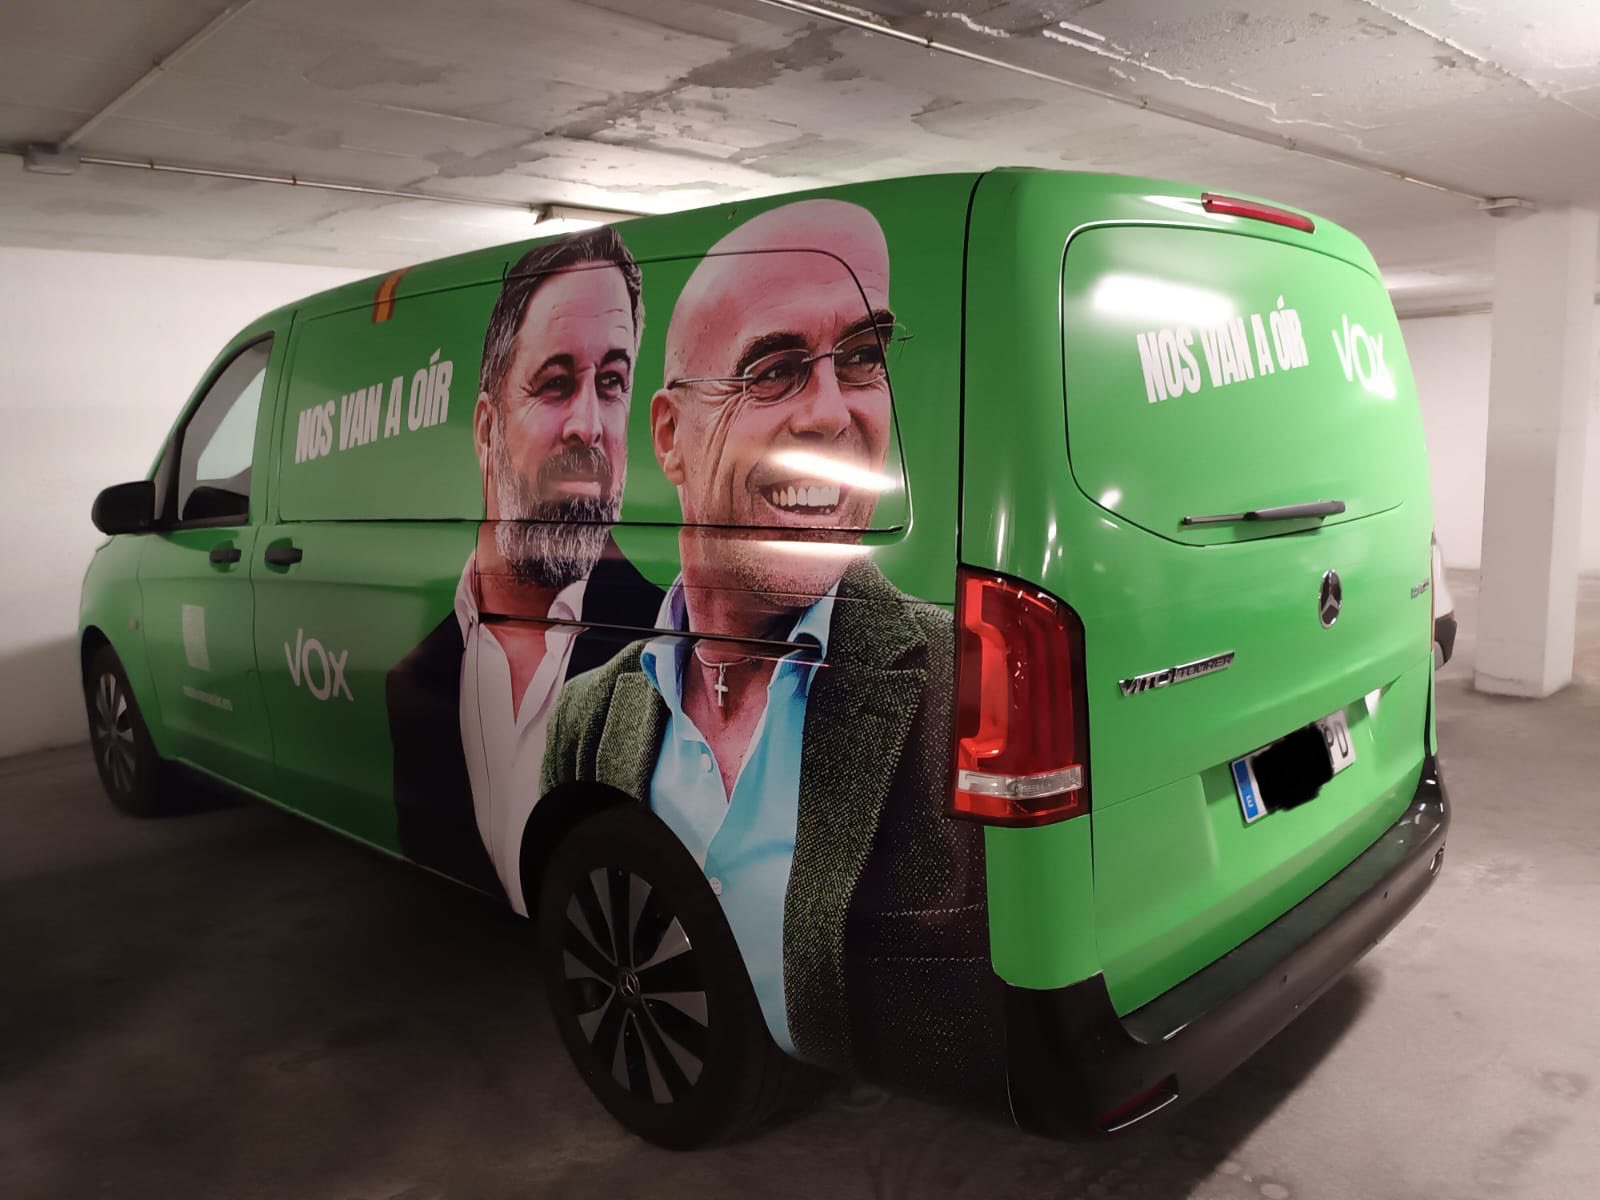 Vox aparca su coche de campaña en el garaje del Ayuntamiento de Talavera: el PSOE lo denunciará ante la Junta Electoral